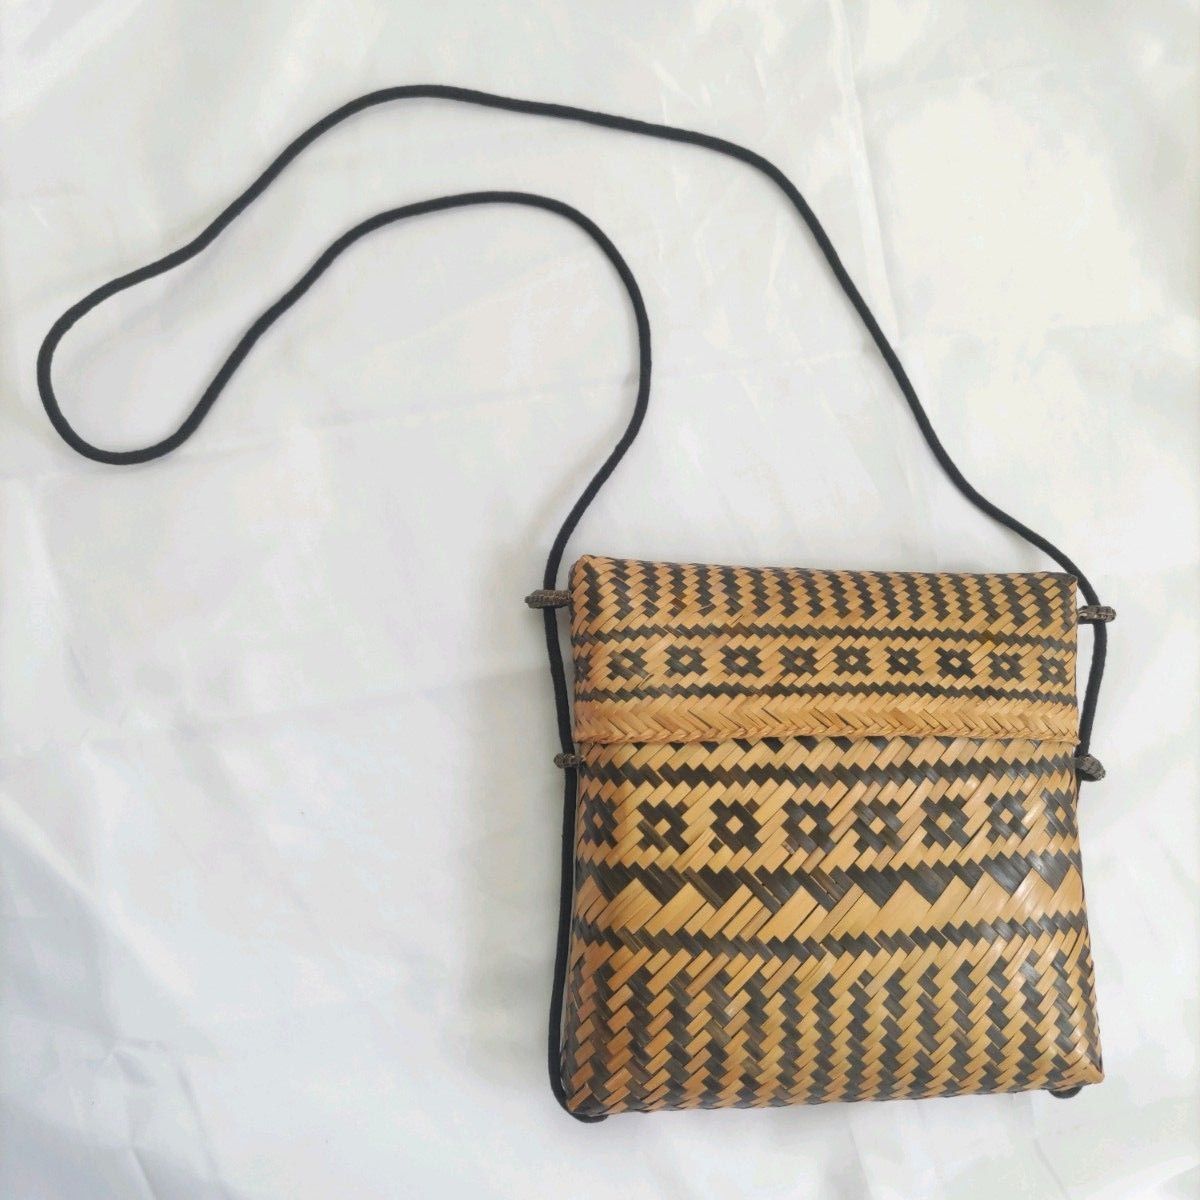 竹素材のミニポシェット型スライドショルダーバッグ  かごバッグ カゴバッグ 編み籠  手作り ハンドメイド 伝統工芸品